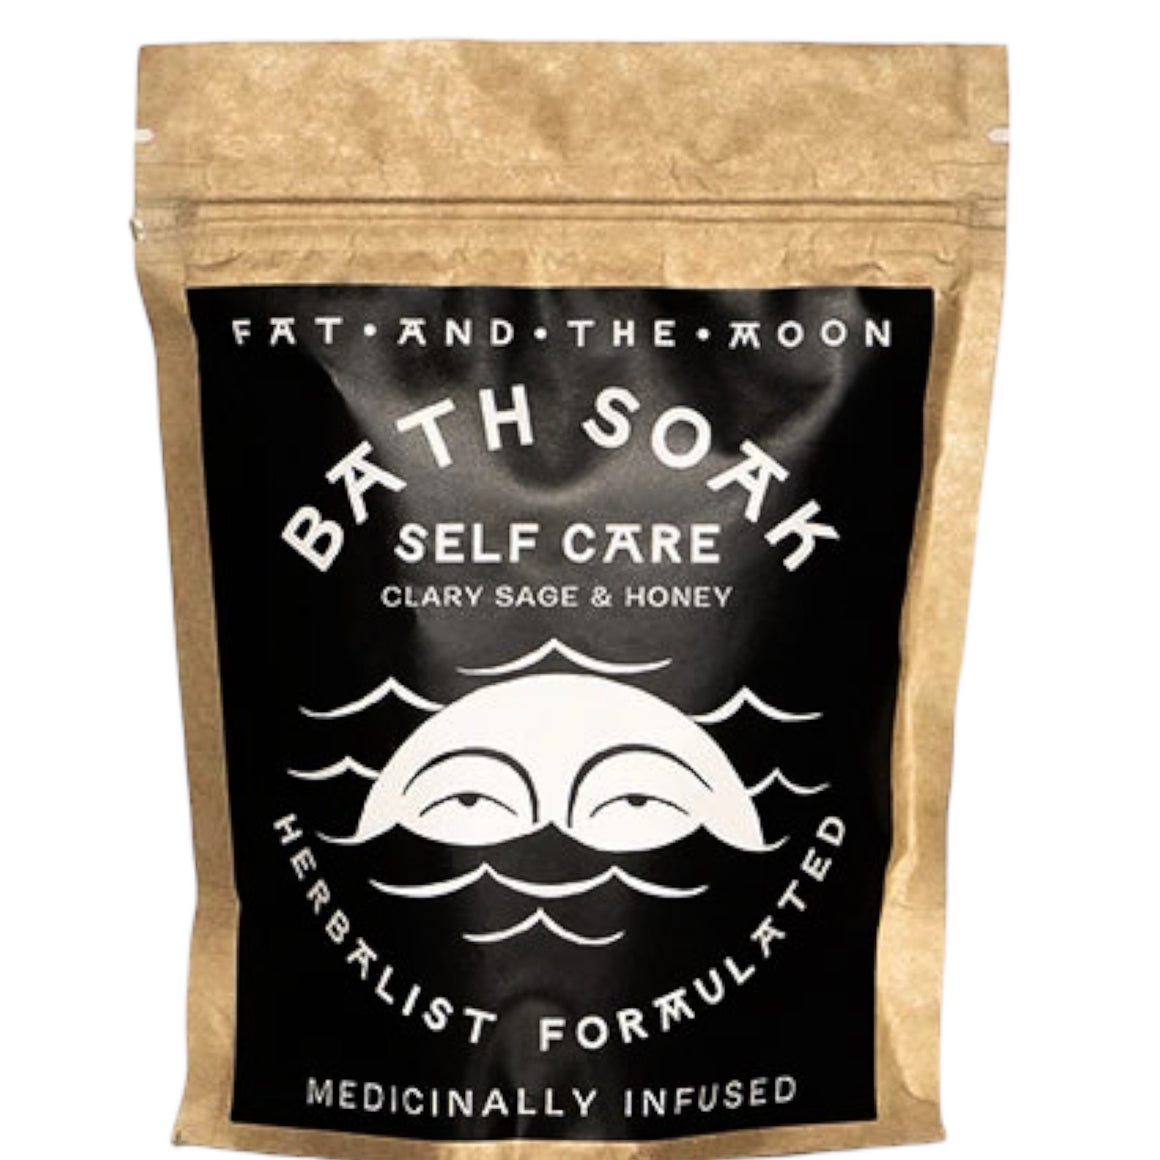 Bath Soak - Self Care - Fat & The Moon 6oz CLEARANCE